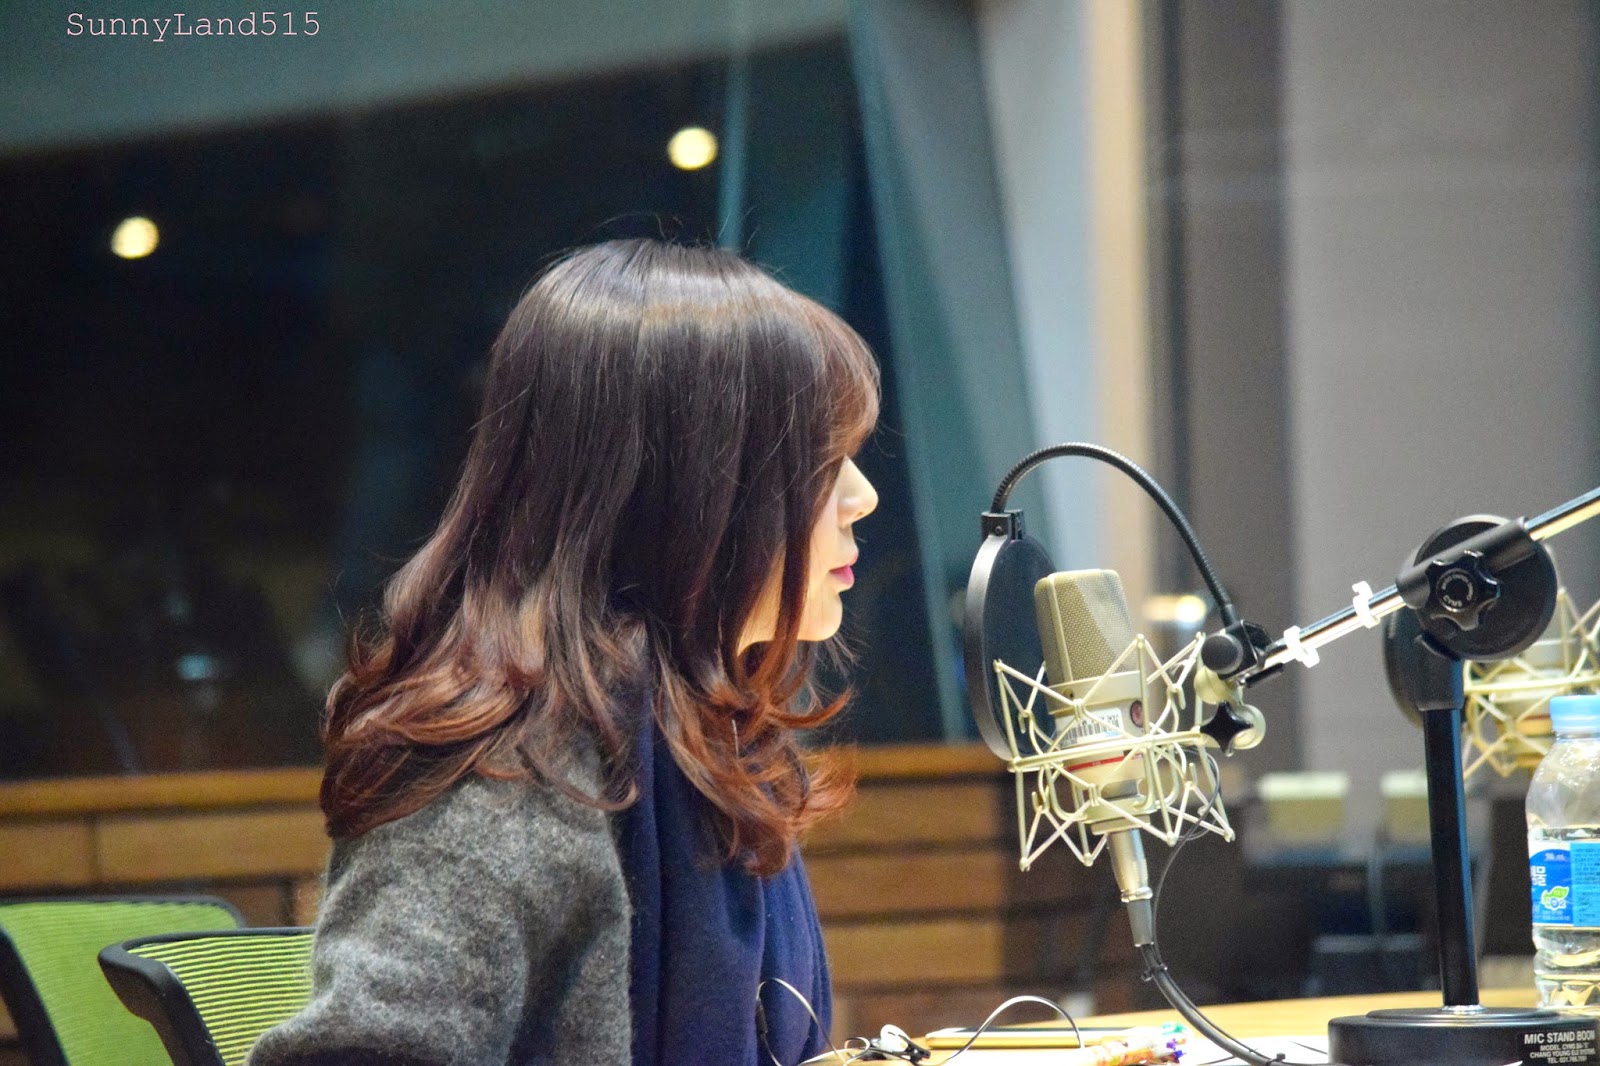 [OTHER][06-02-2015]Hình ảnh mới nhất từ DJ Sunny tại Radio MBC FM4U - "FM Date" - Page 10 DSC_0337_Fotor